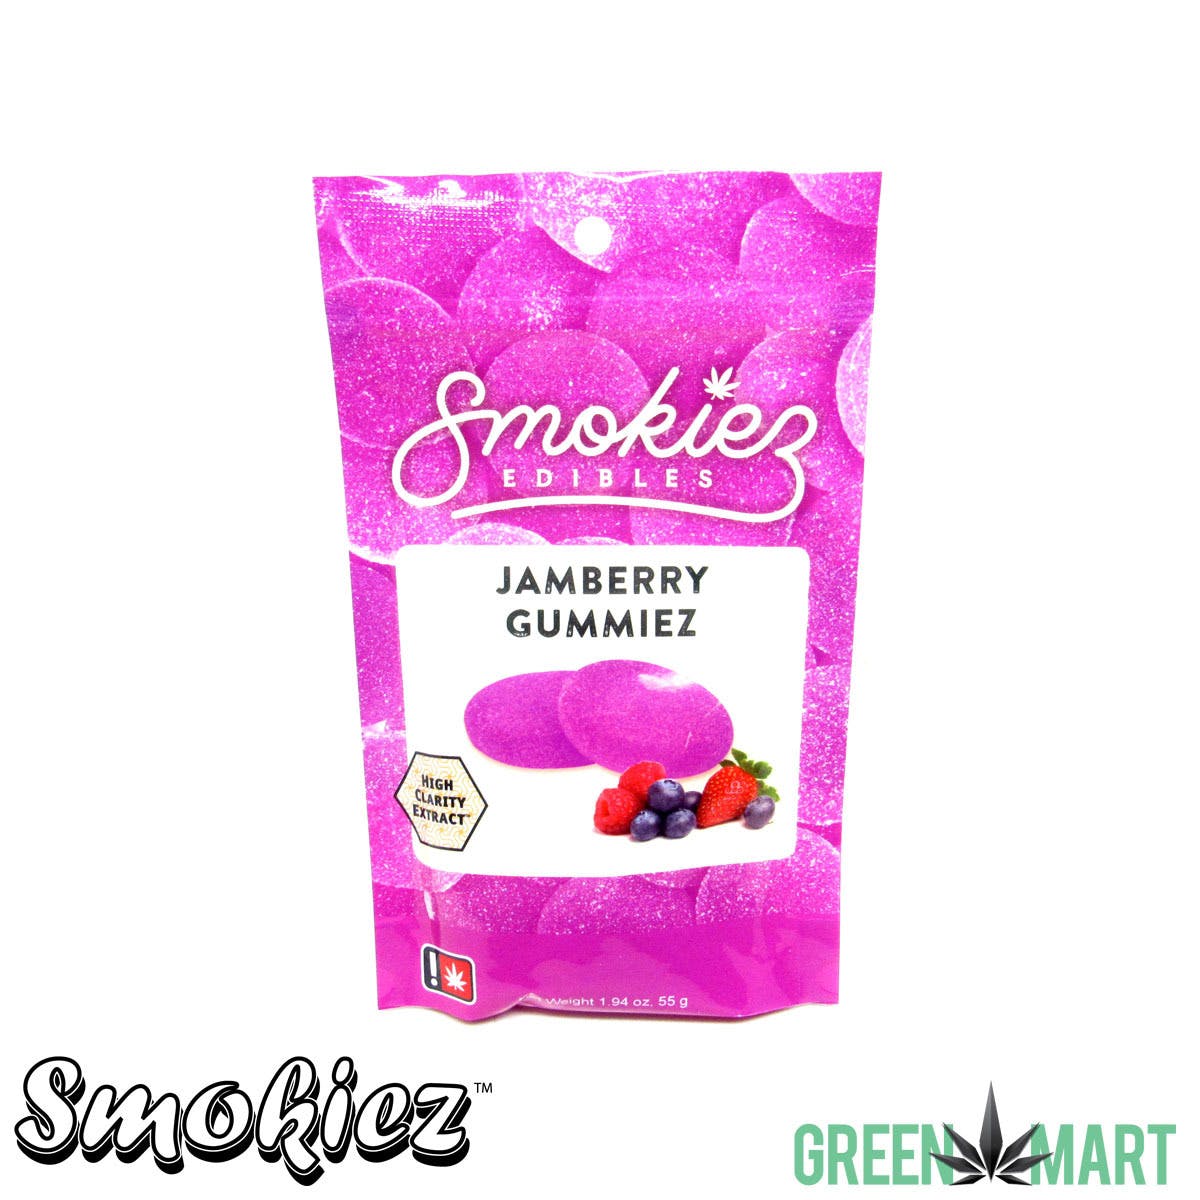 edible-smokiez-gummiez-jamberry